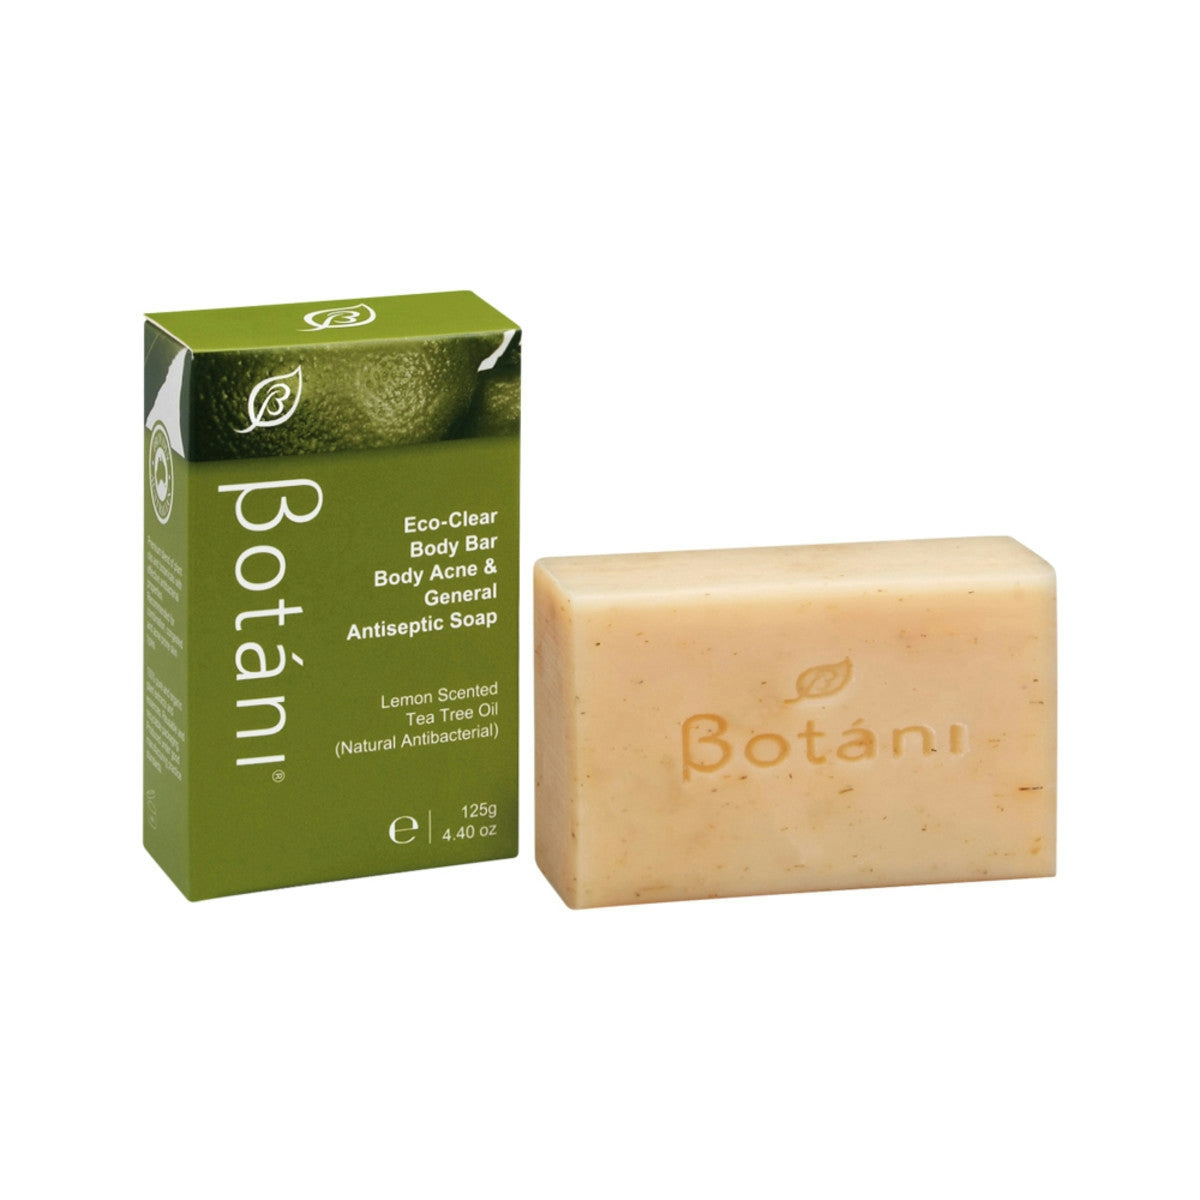 image of Botani Eco Clear Body Bar Antiseptic Soap 125g on white background 